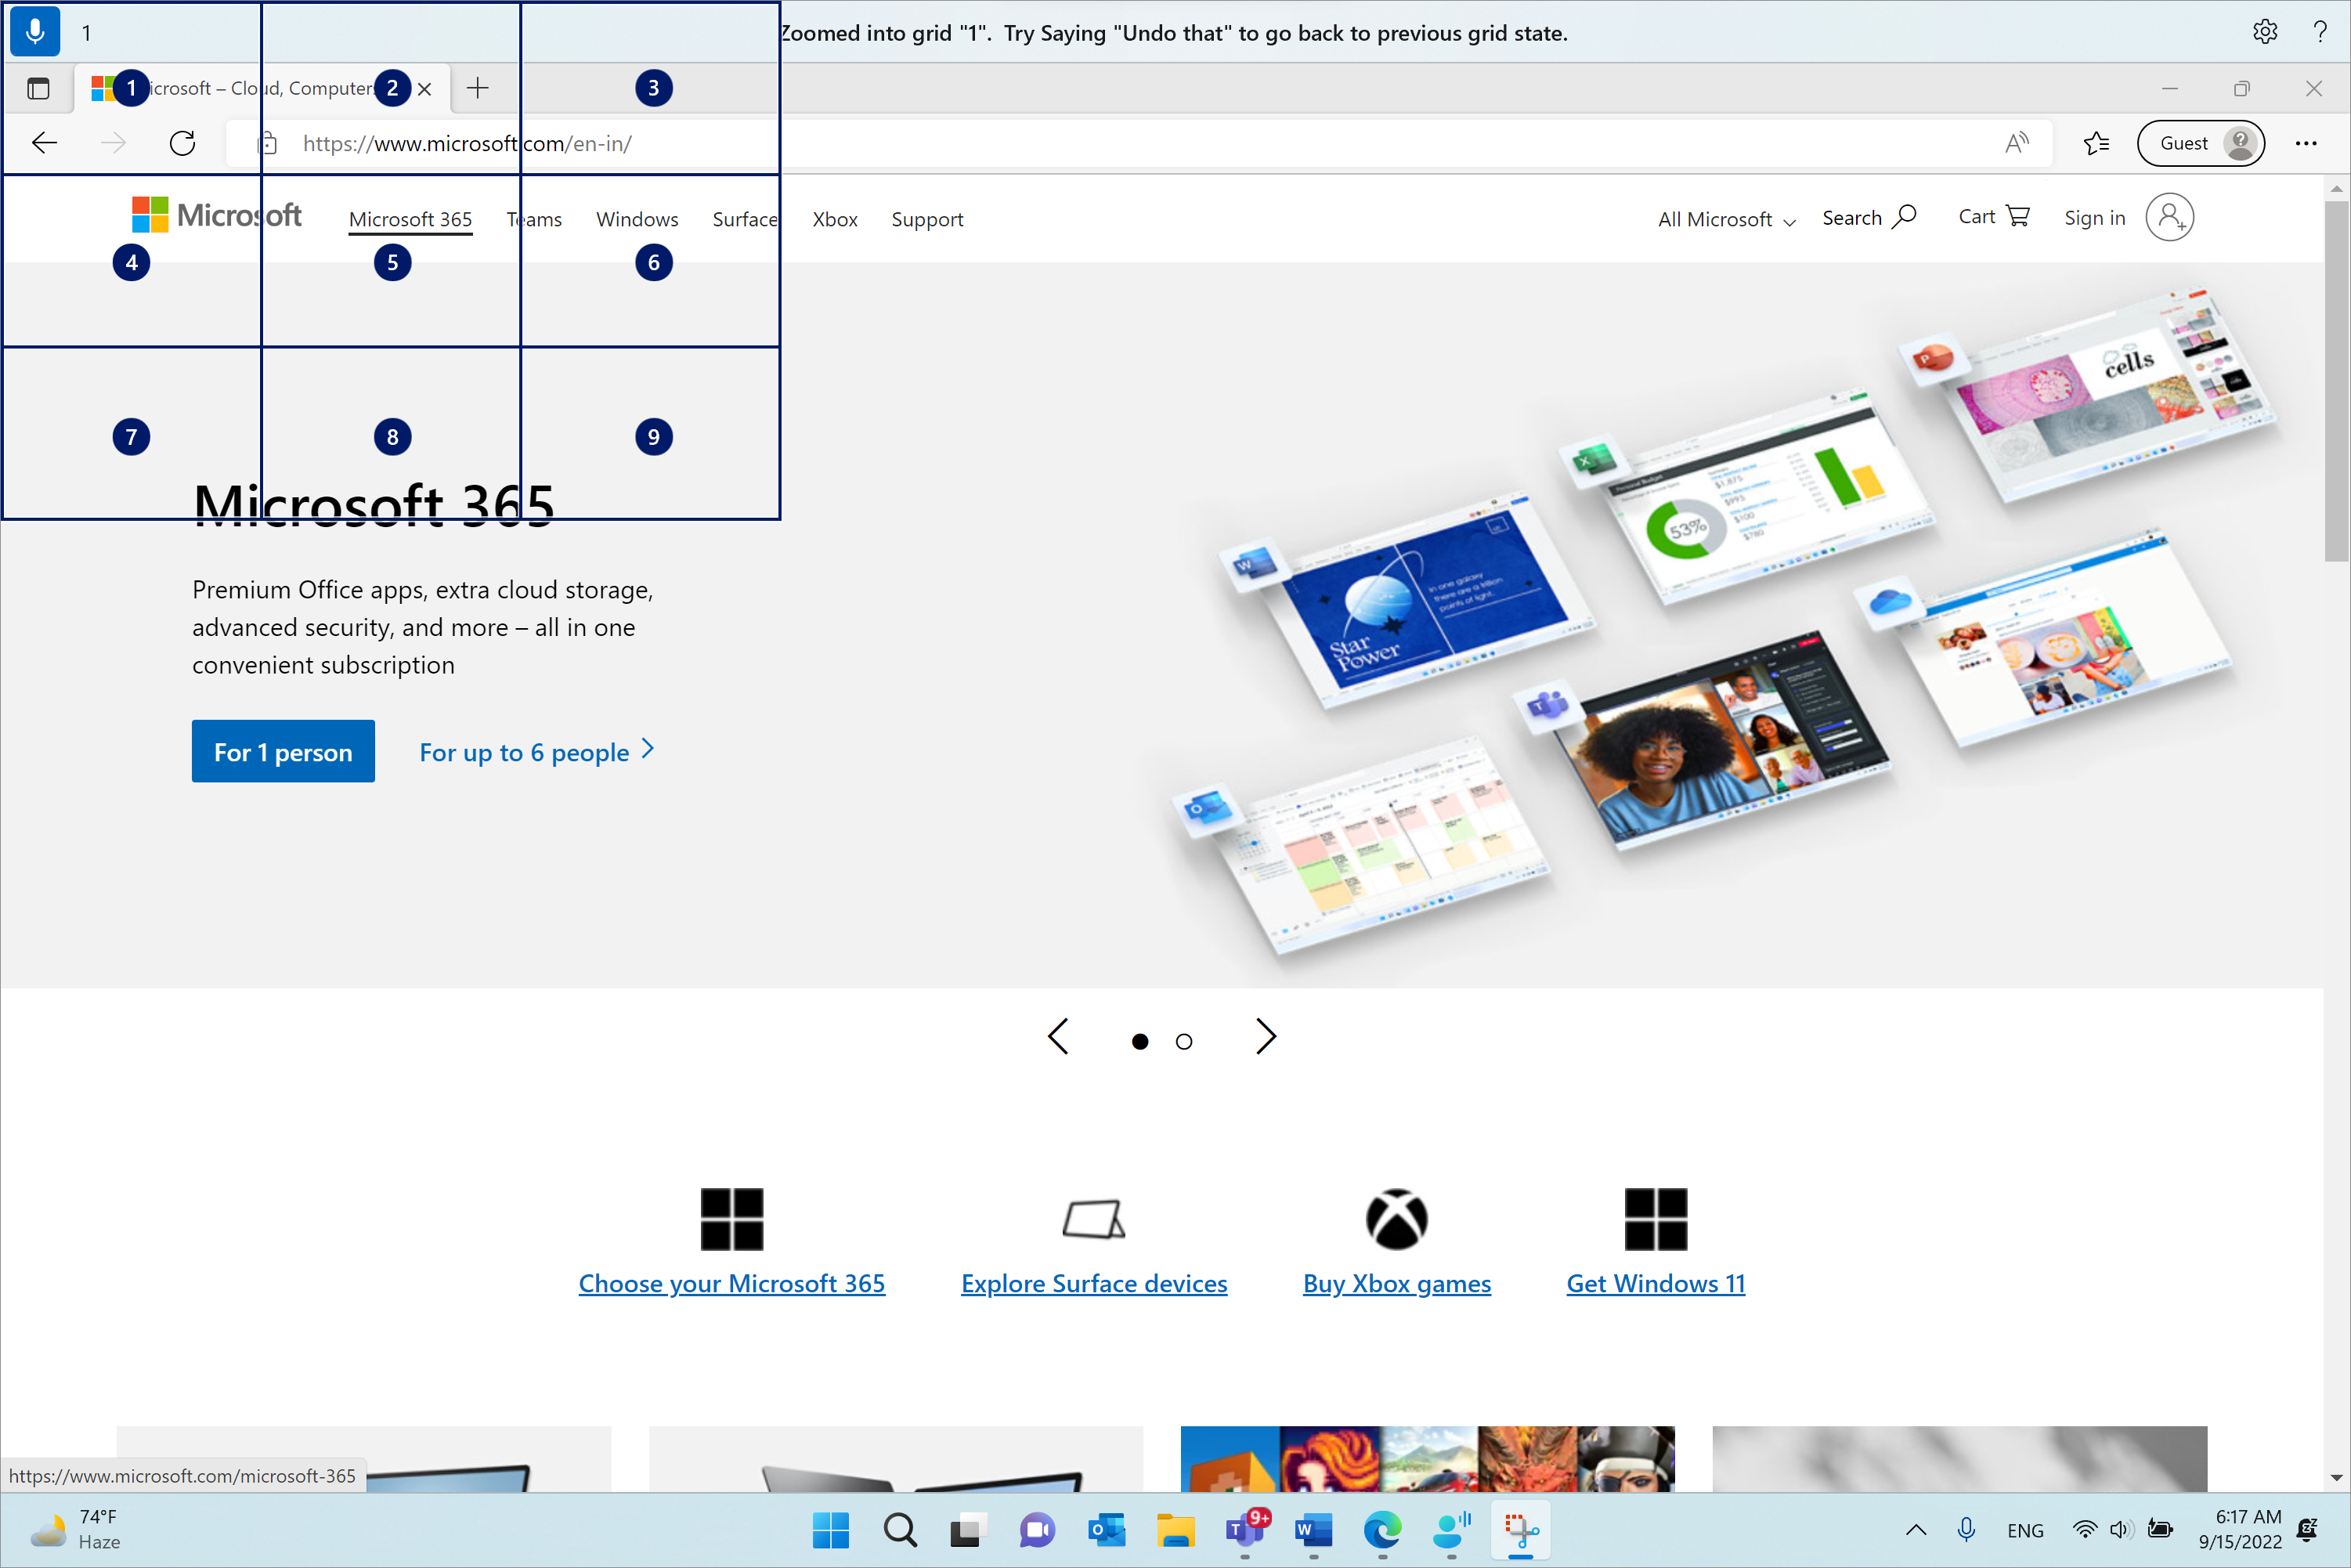 Microsoft Edge is geopend en op de Microsoft.com pagina. De spraaktoegangsbalk bevindt zich bovenaan en bevindt zich in de luisterstatus. De uitgegeven opdracht is '1' en de weergegeven feedback is 'Ingezoomd op raster '1'. Probeer 'ongedaan maken' te zeggen om terug te gaan naar de vorige rasterstatus.'